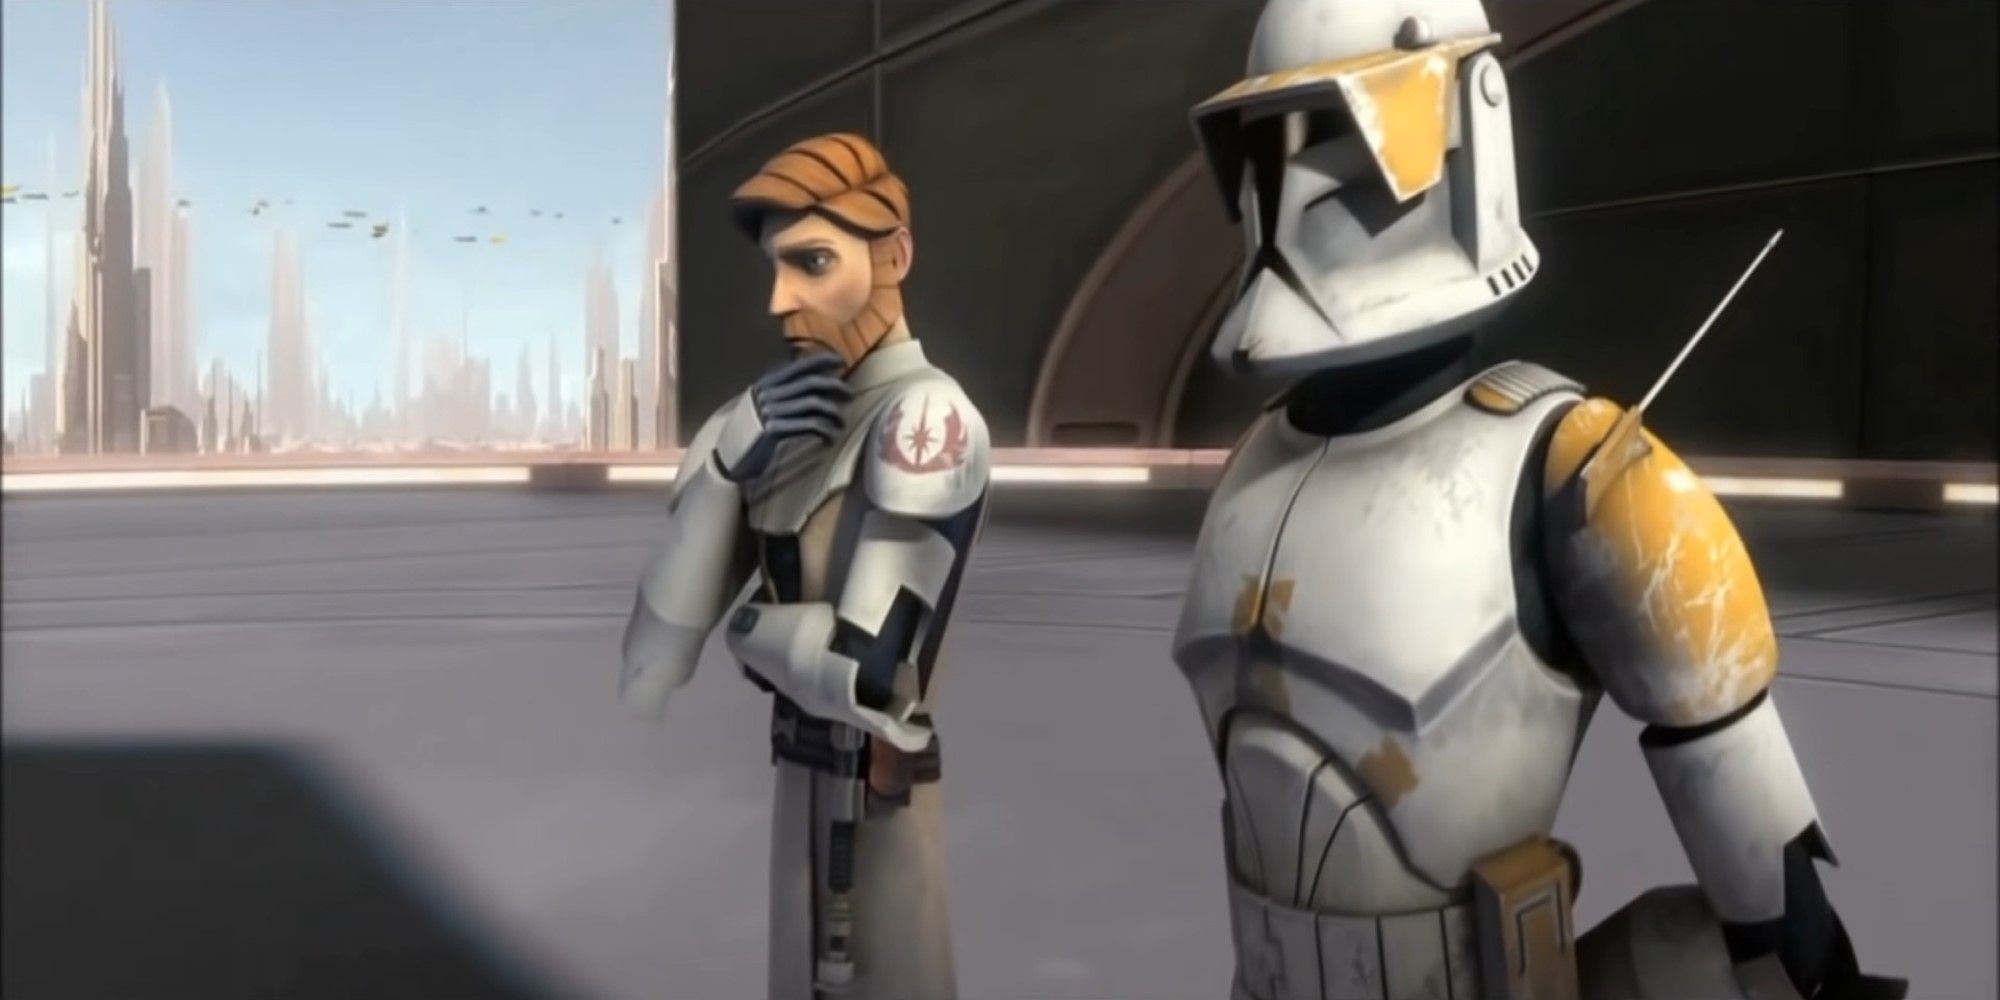 Clone Wars Commander Cody and Obi Wan